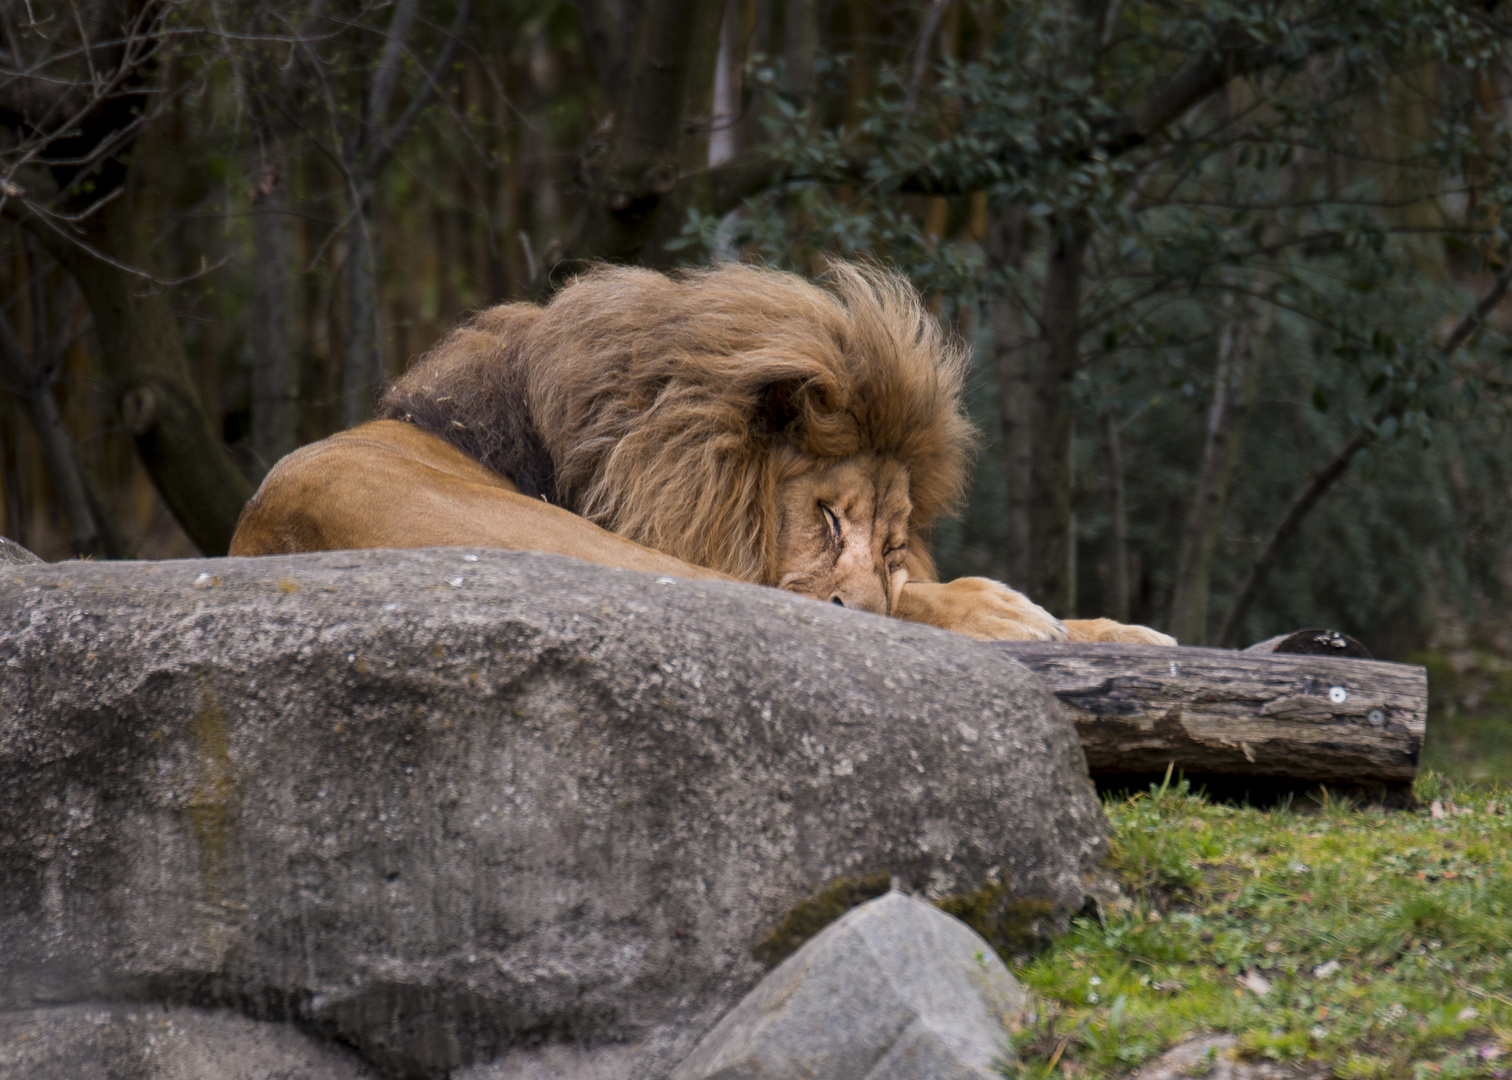 the lion sleep tonight